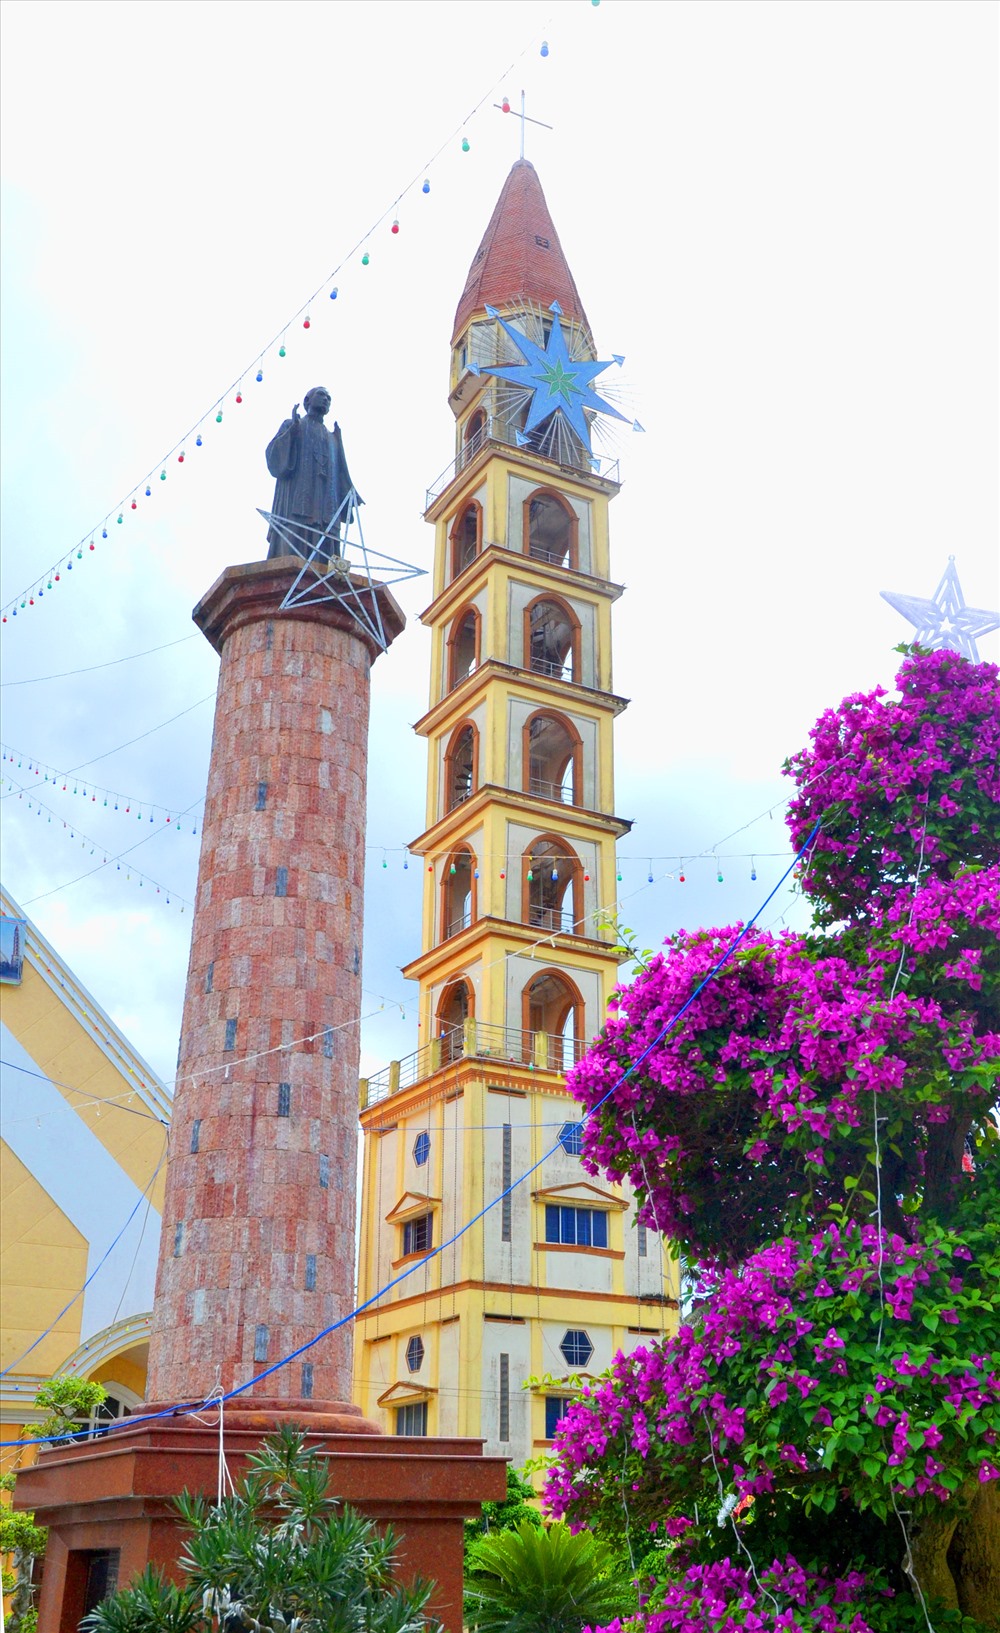 Gần tháp chuông là tượng của Thánh Phan Văn Minh (1815- 1858), người con  của đất Cái Mơn- thu phong linh mục 1846, hiển thánh  năm 1988. (Ảnh: Lục Tùng)